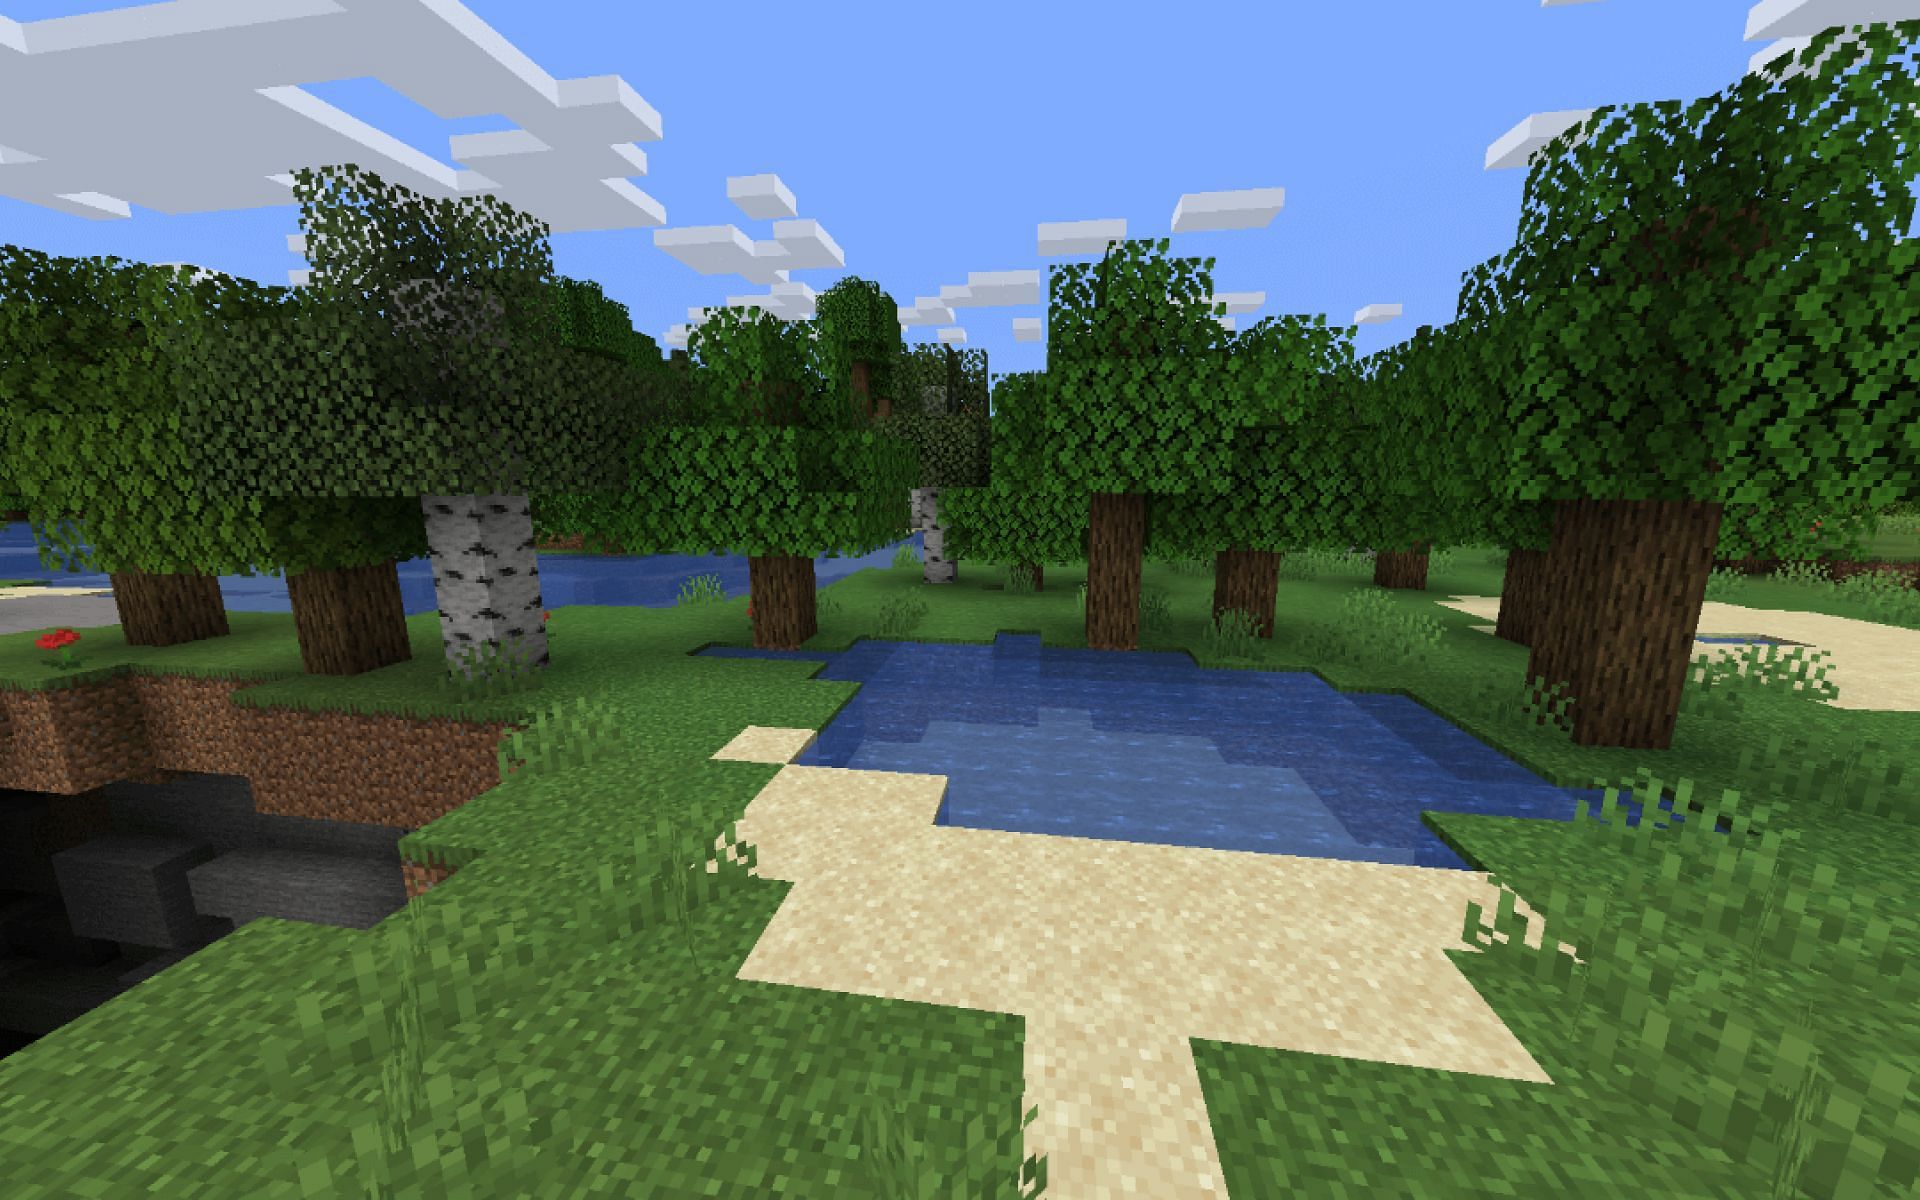 An image of oak trees in-game (Image via Mojang Studios)